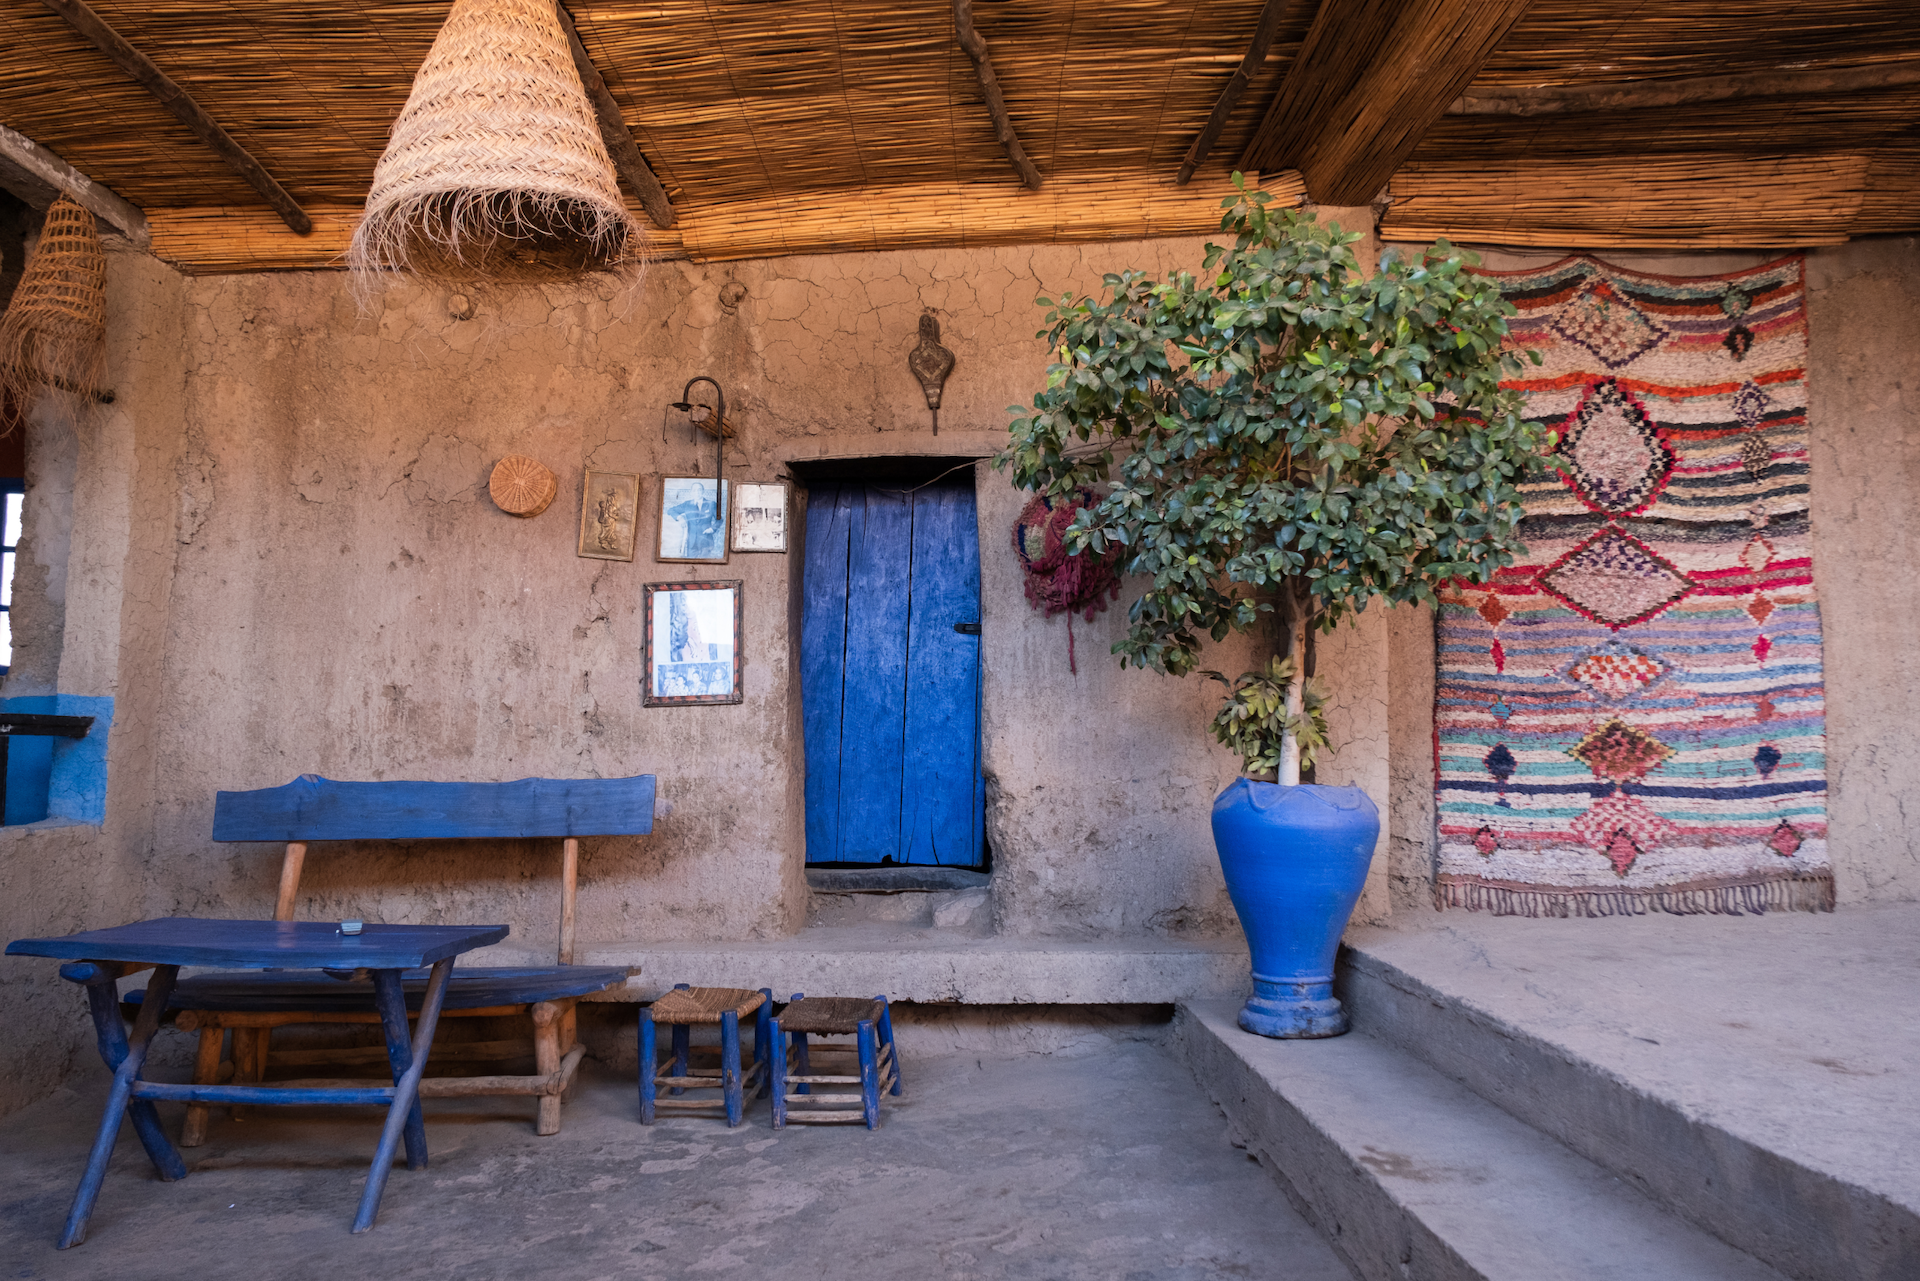 Innenansicht eines traditionellen Berber-Hauses in Marokko